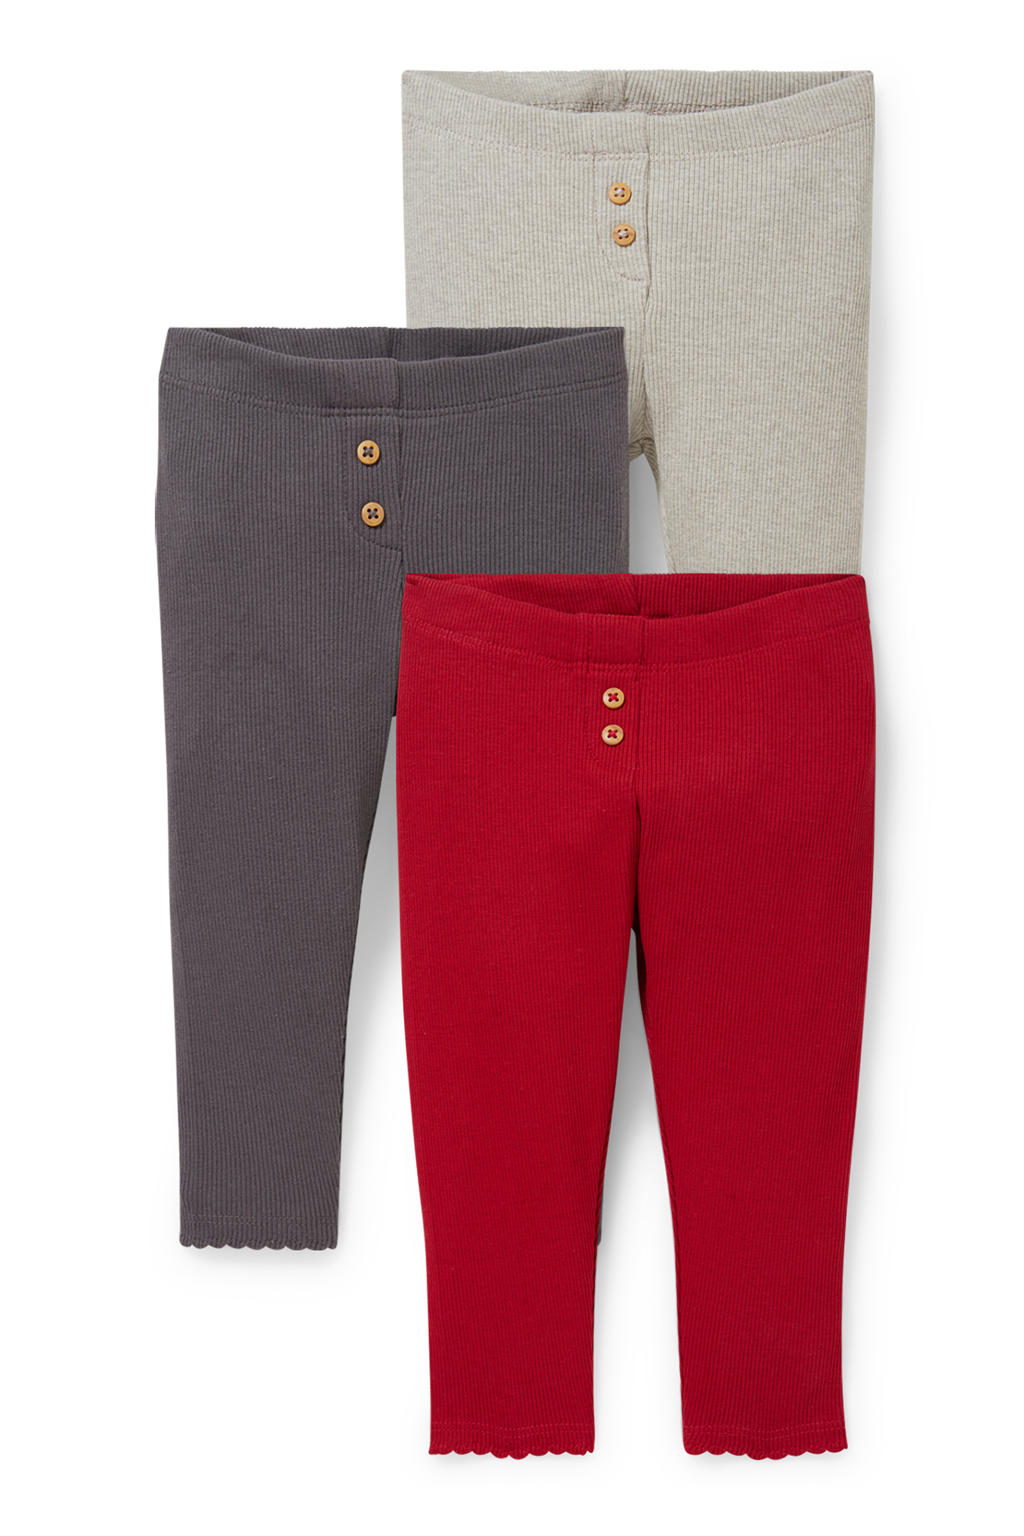 C&A legging - set van 3 rood/grijs/beige